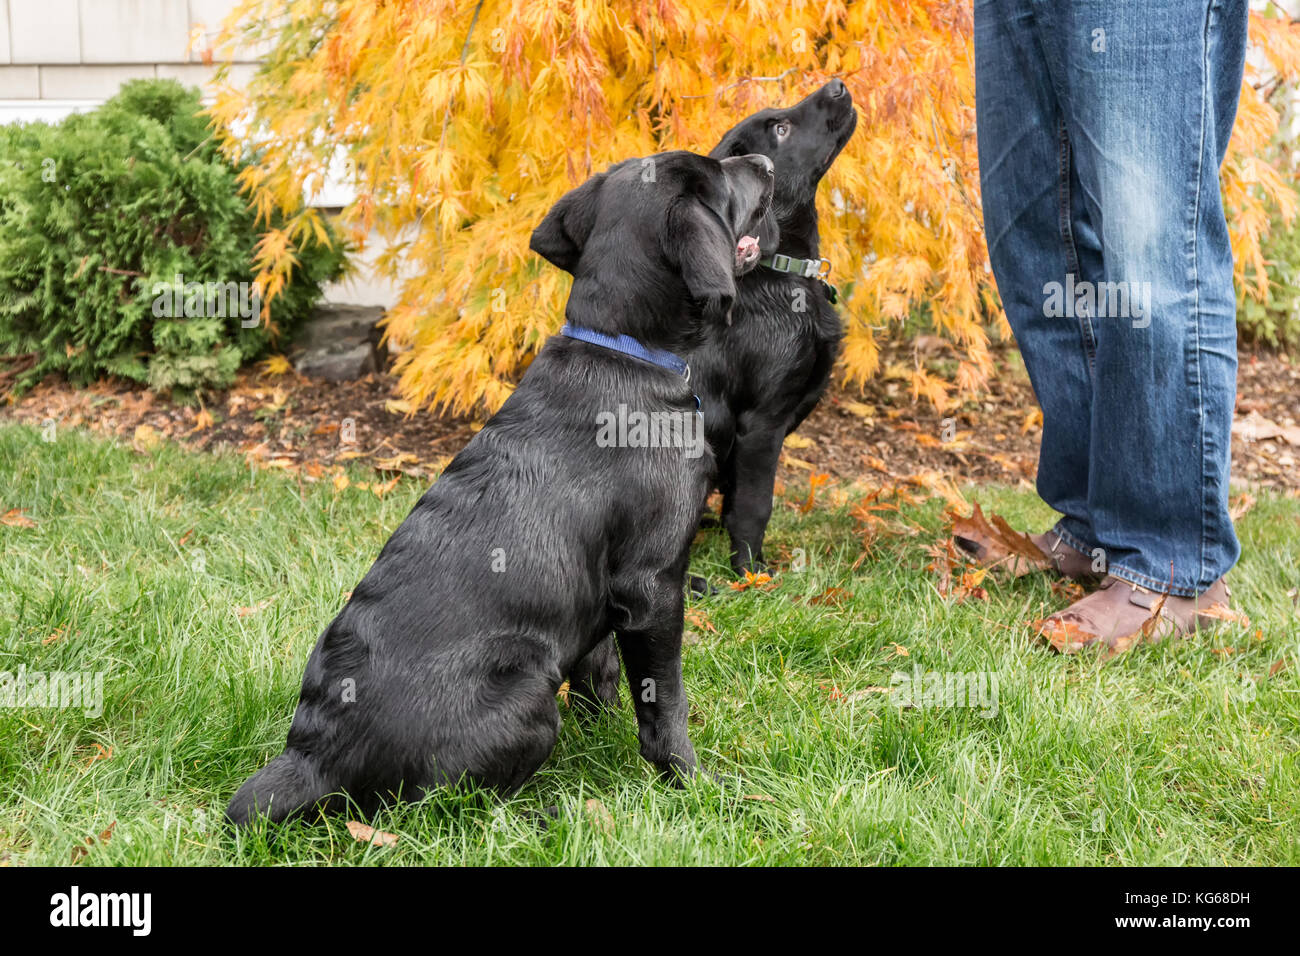 'Shadow' et 'Baxtor', trois mois chiots Labrador noir, formés pour s'asseoir et de rester, à Bellevue, Washington, USA Banque D'Images